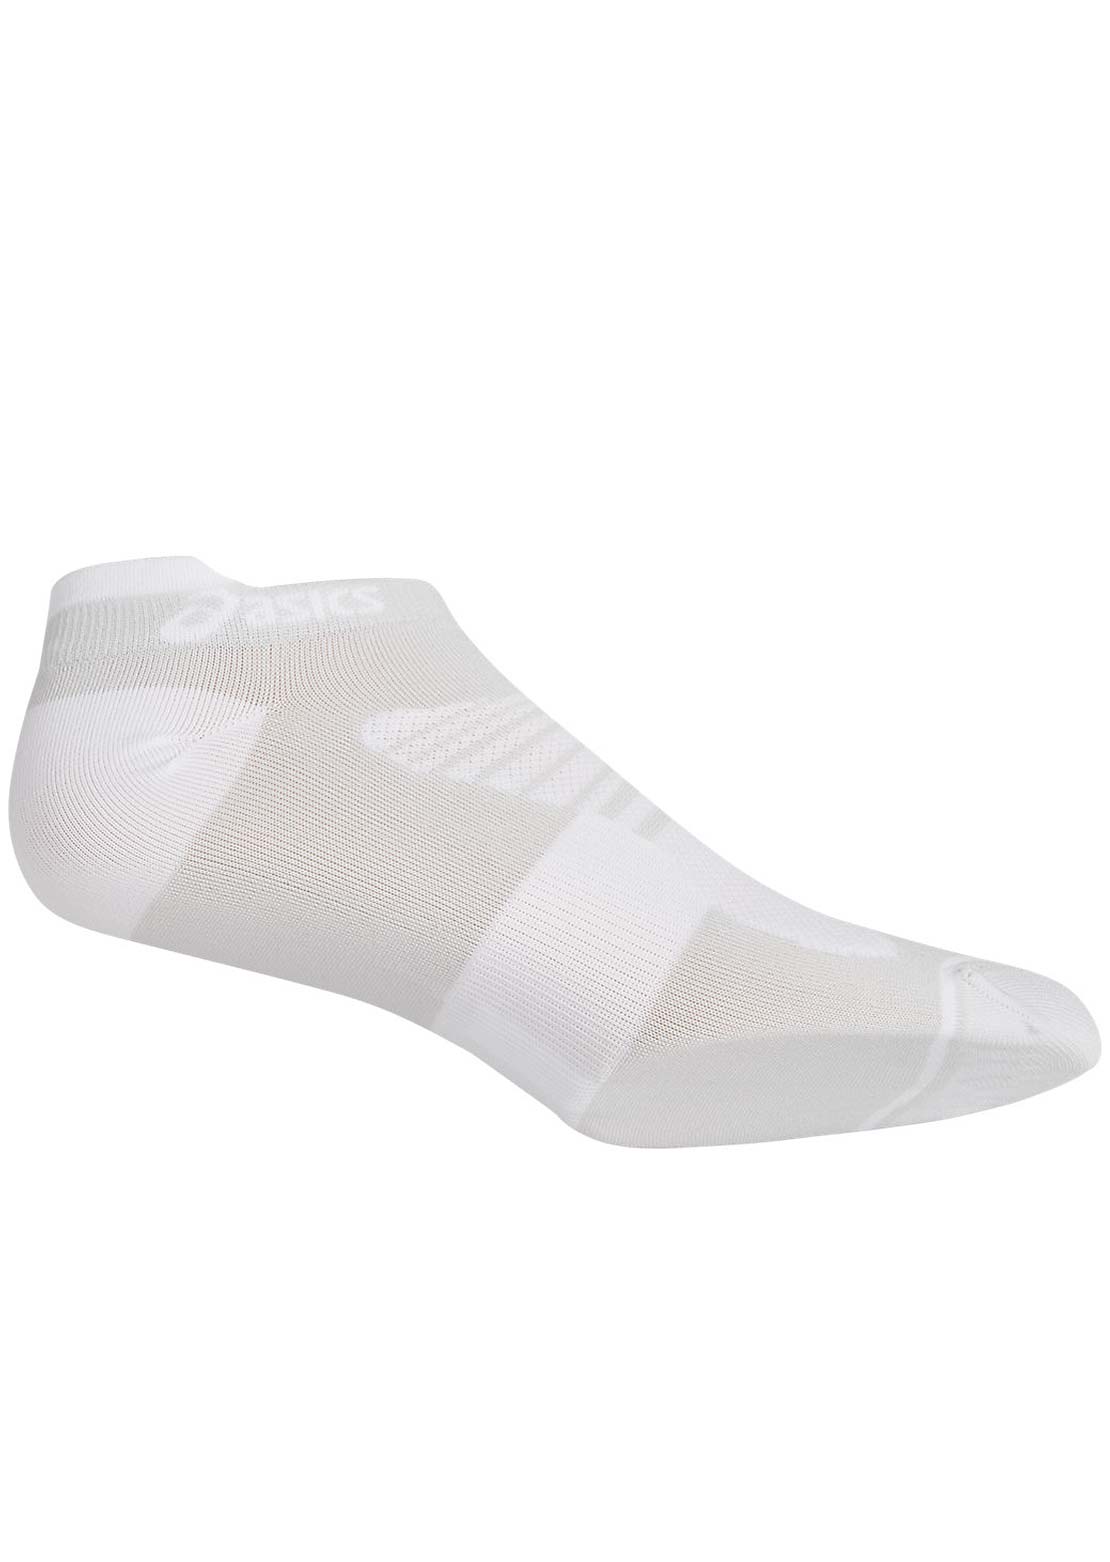 Asics Men&#39;s Quick Lyte Plus 3 Pack Socks Brilliant White/Performance Black